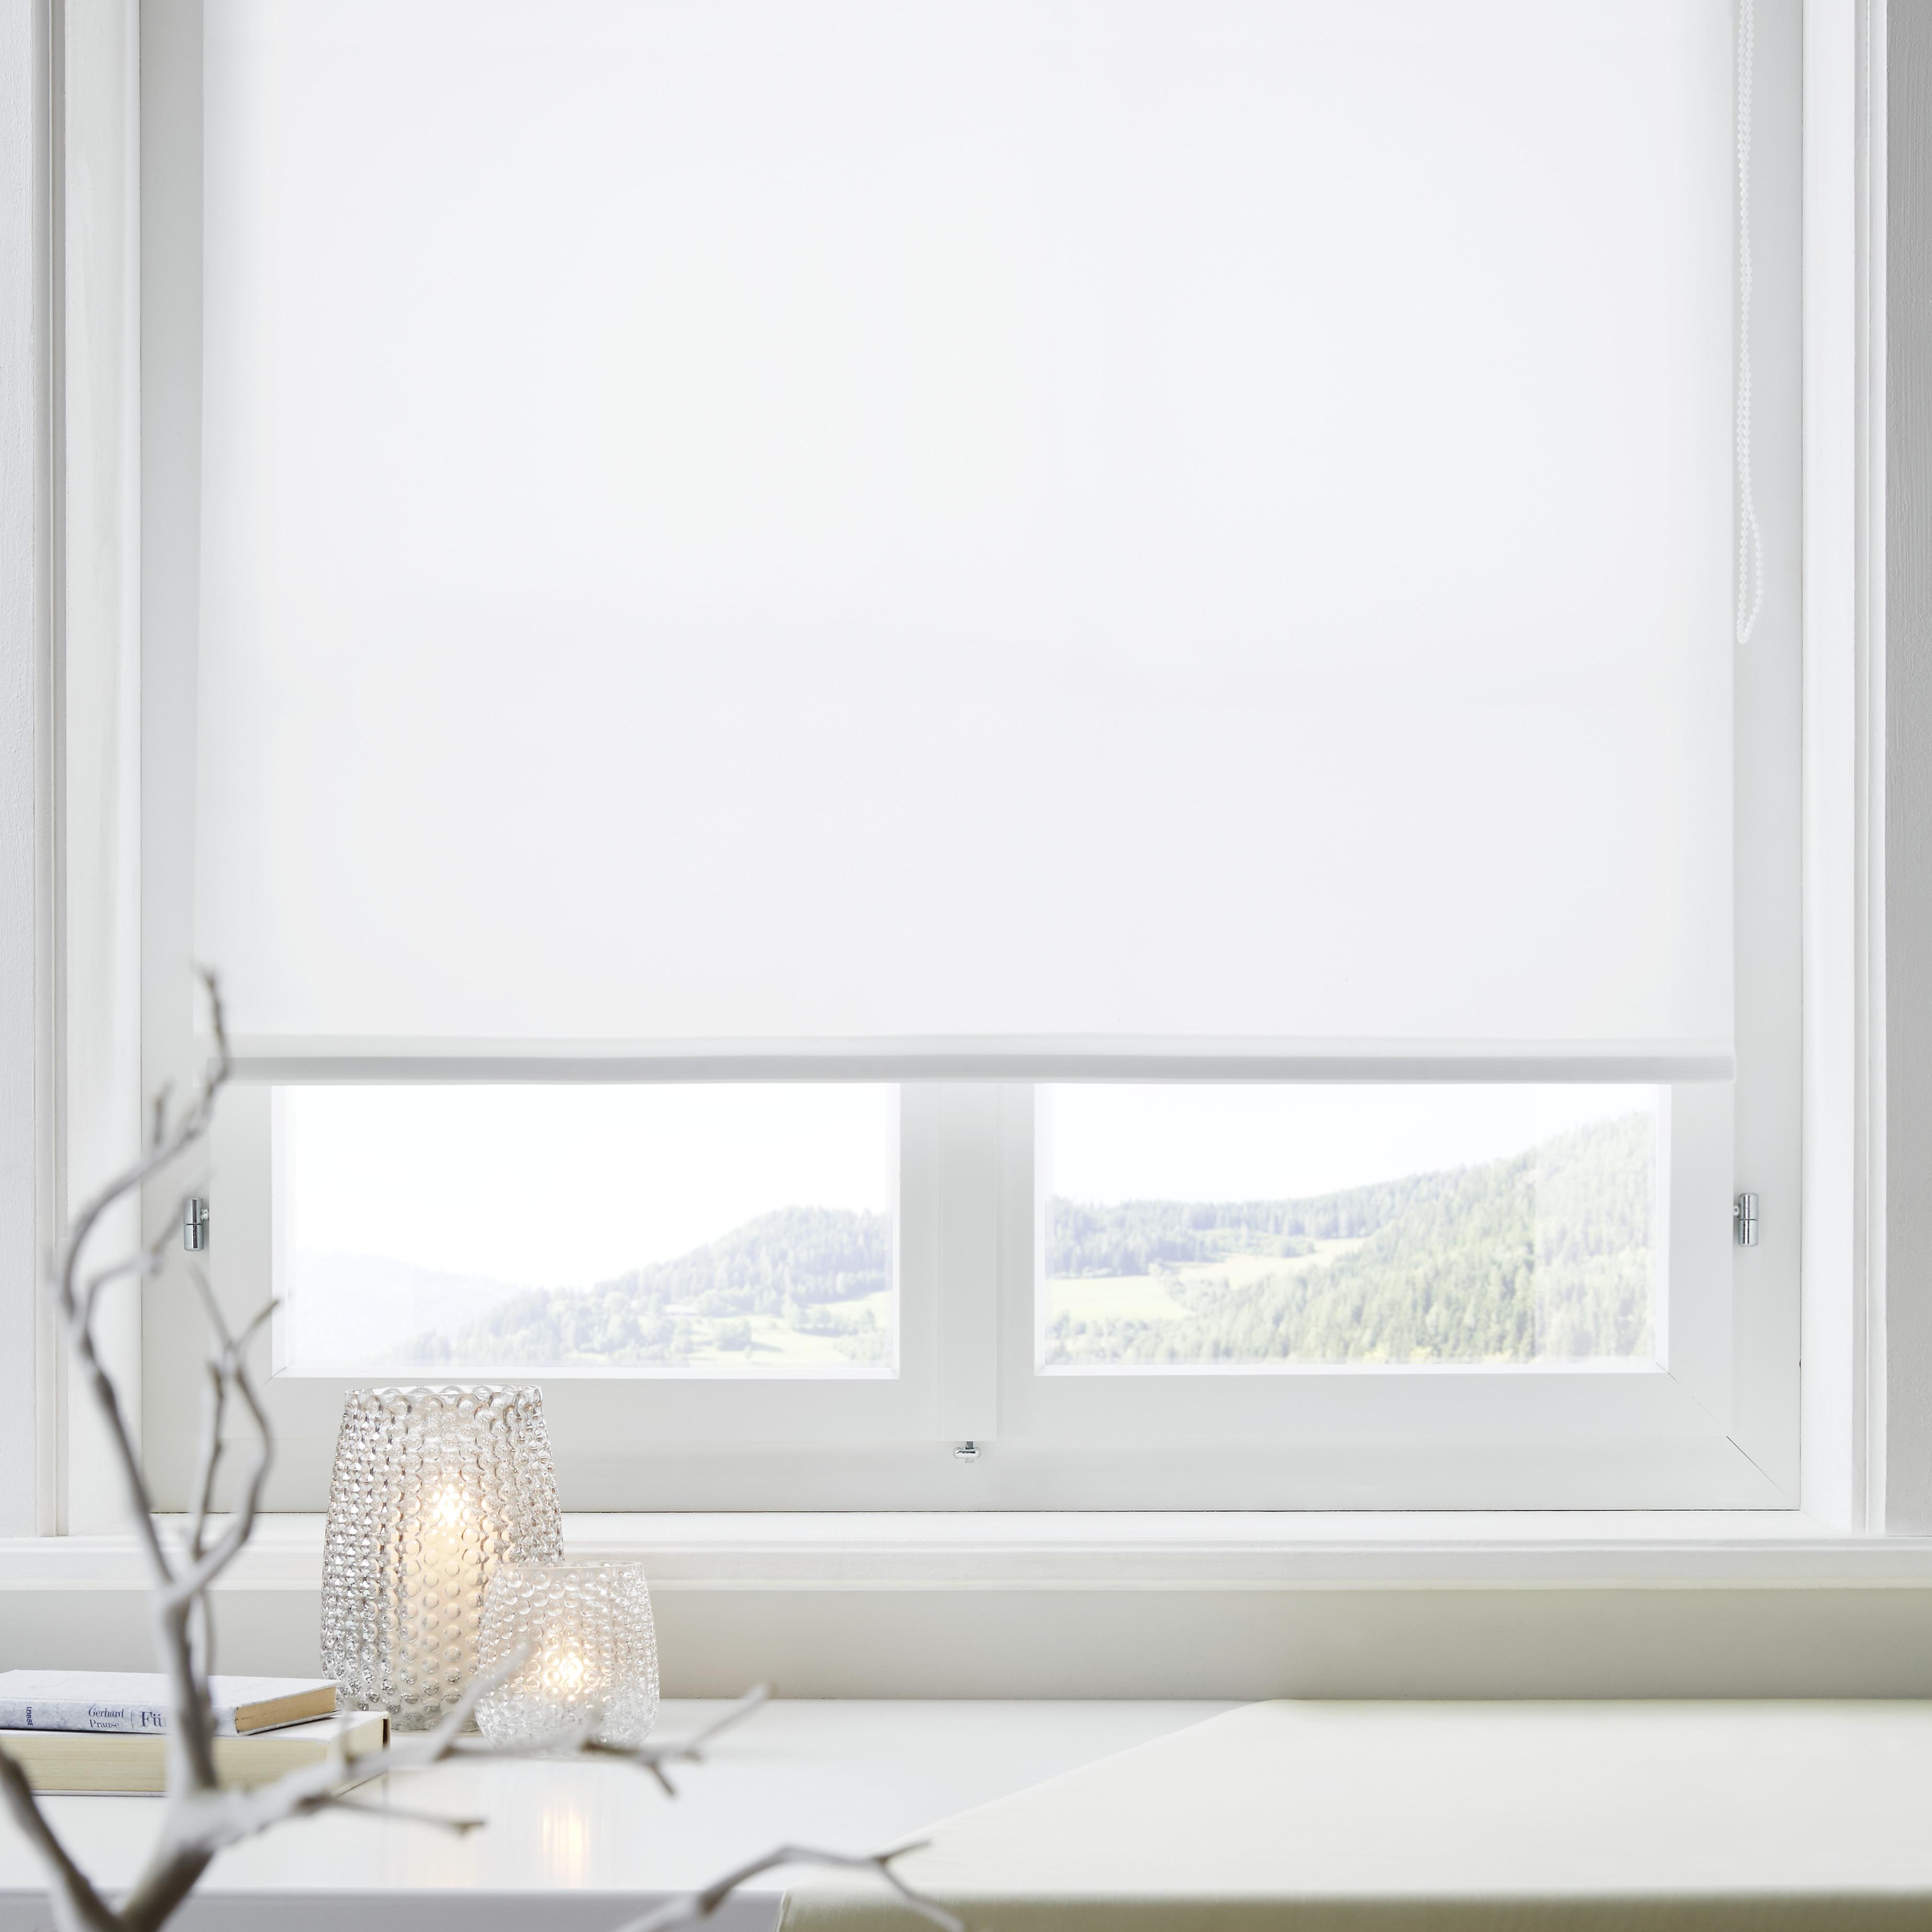 Klemmrollo Thermo in Weiß ca. 60x150cm - Weiß, Textil (60/150cm) - Premium Living